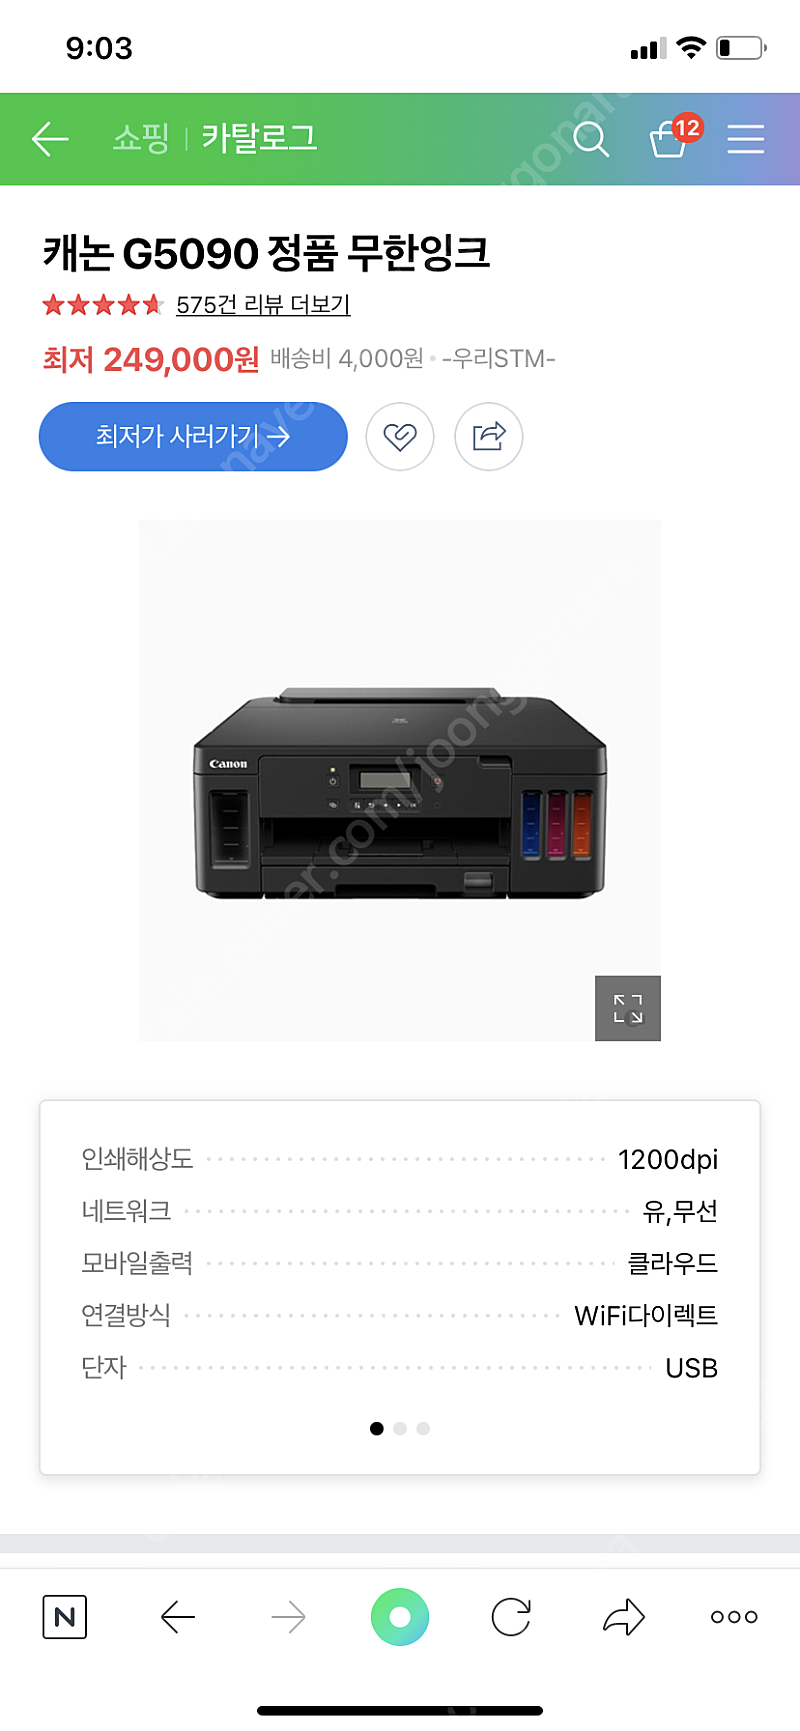 캐논 G5090 무한잉크 프린터 팔아요 ! (대구 경산 직거래)